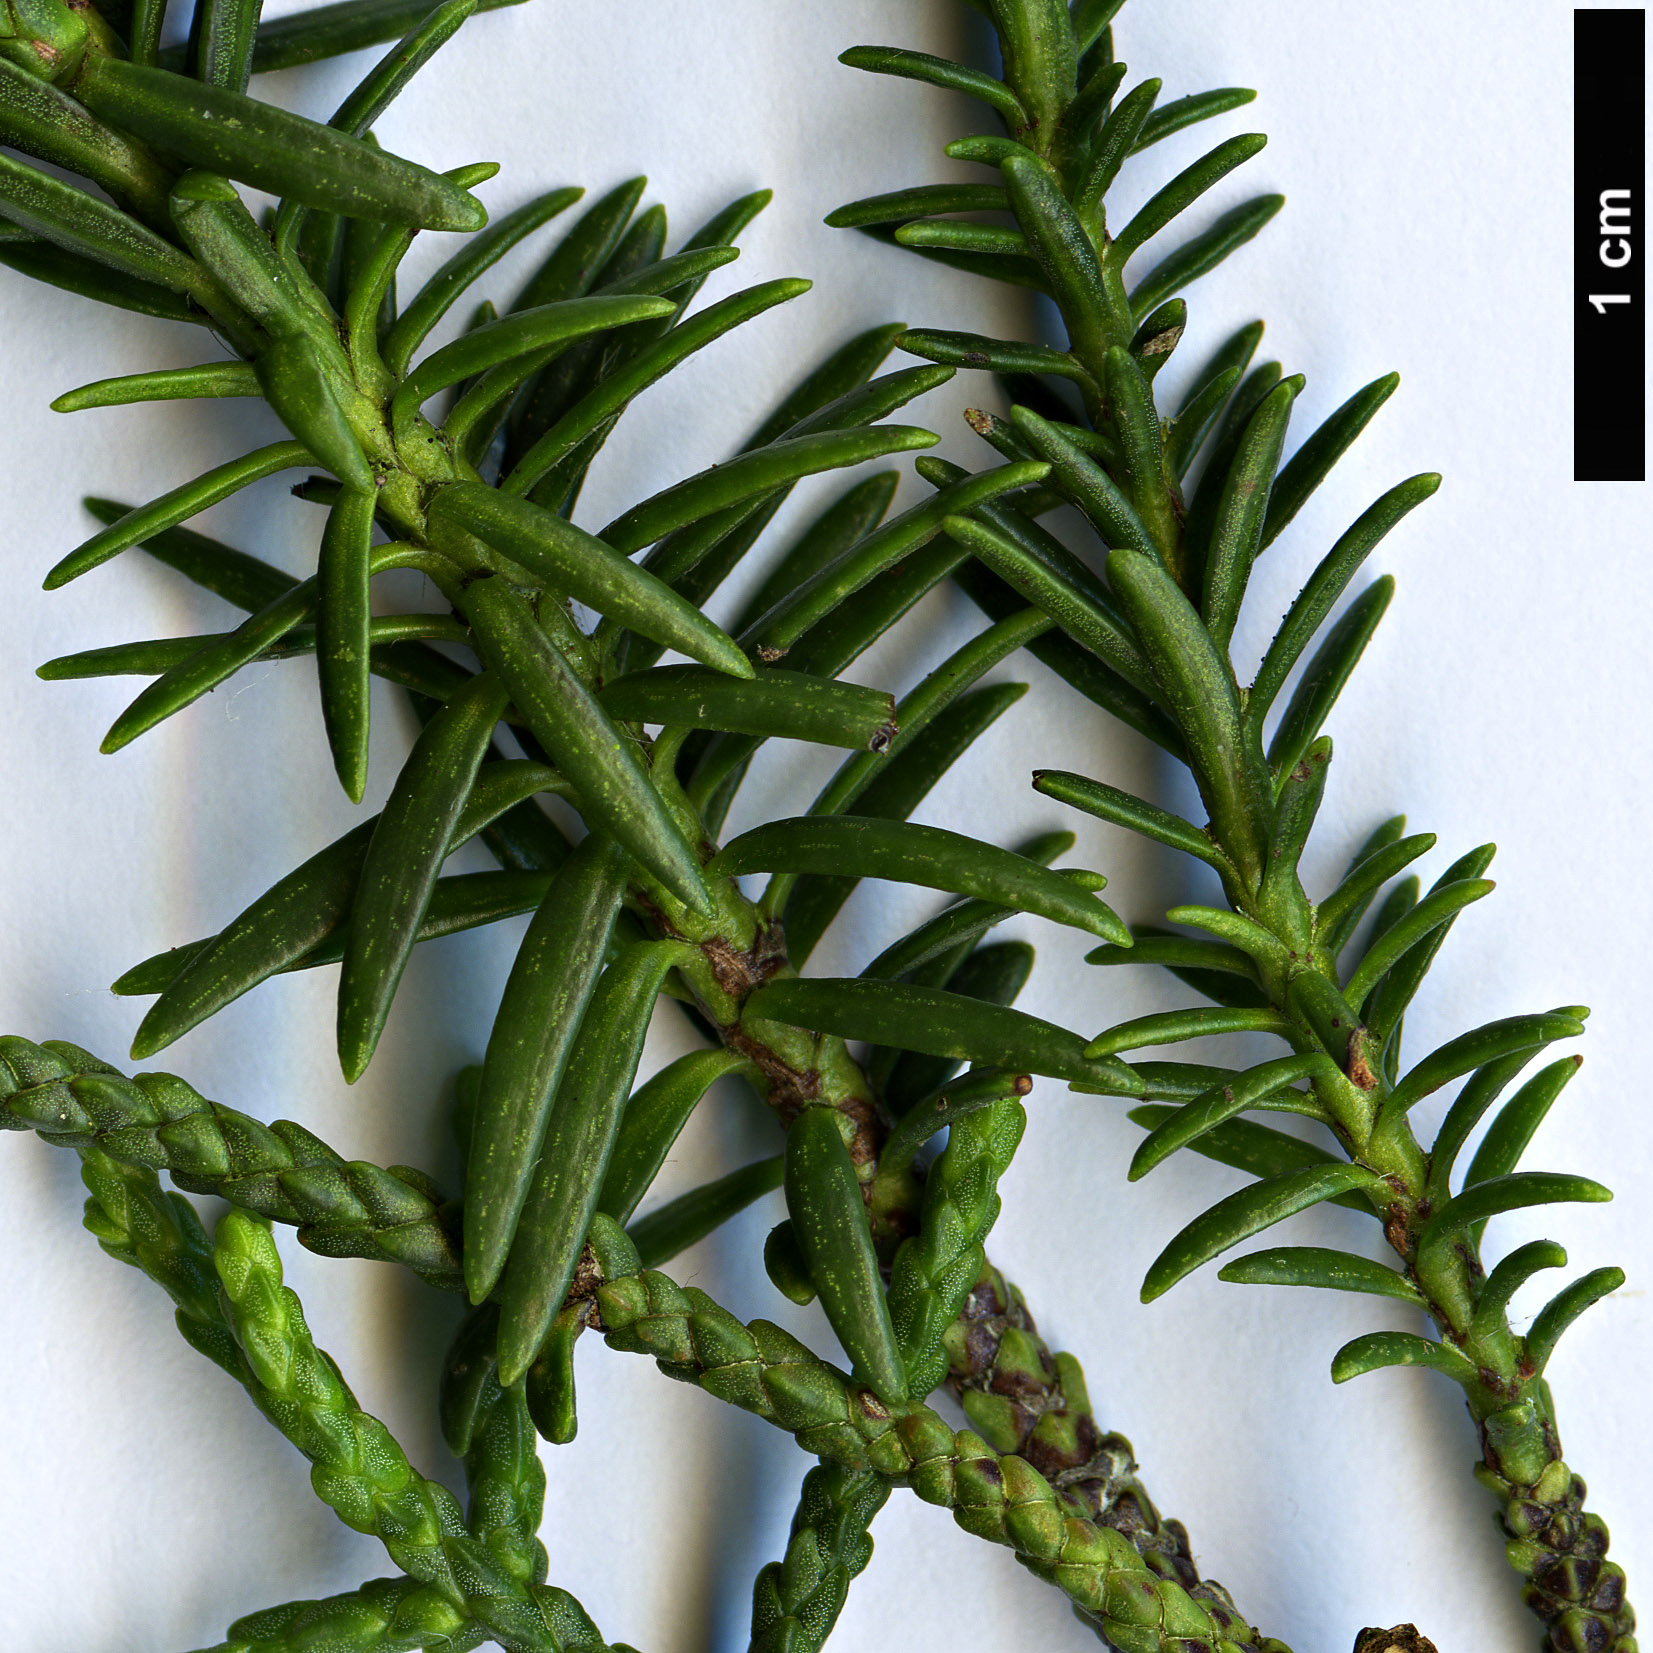 High resolution image: Family: Podocarpaceae - Genus: Halocarpus - Taxon: biformis